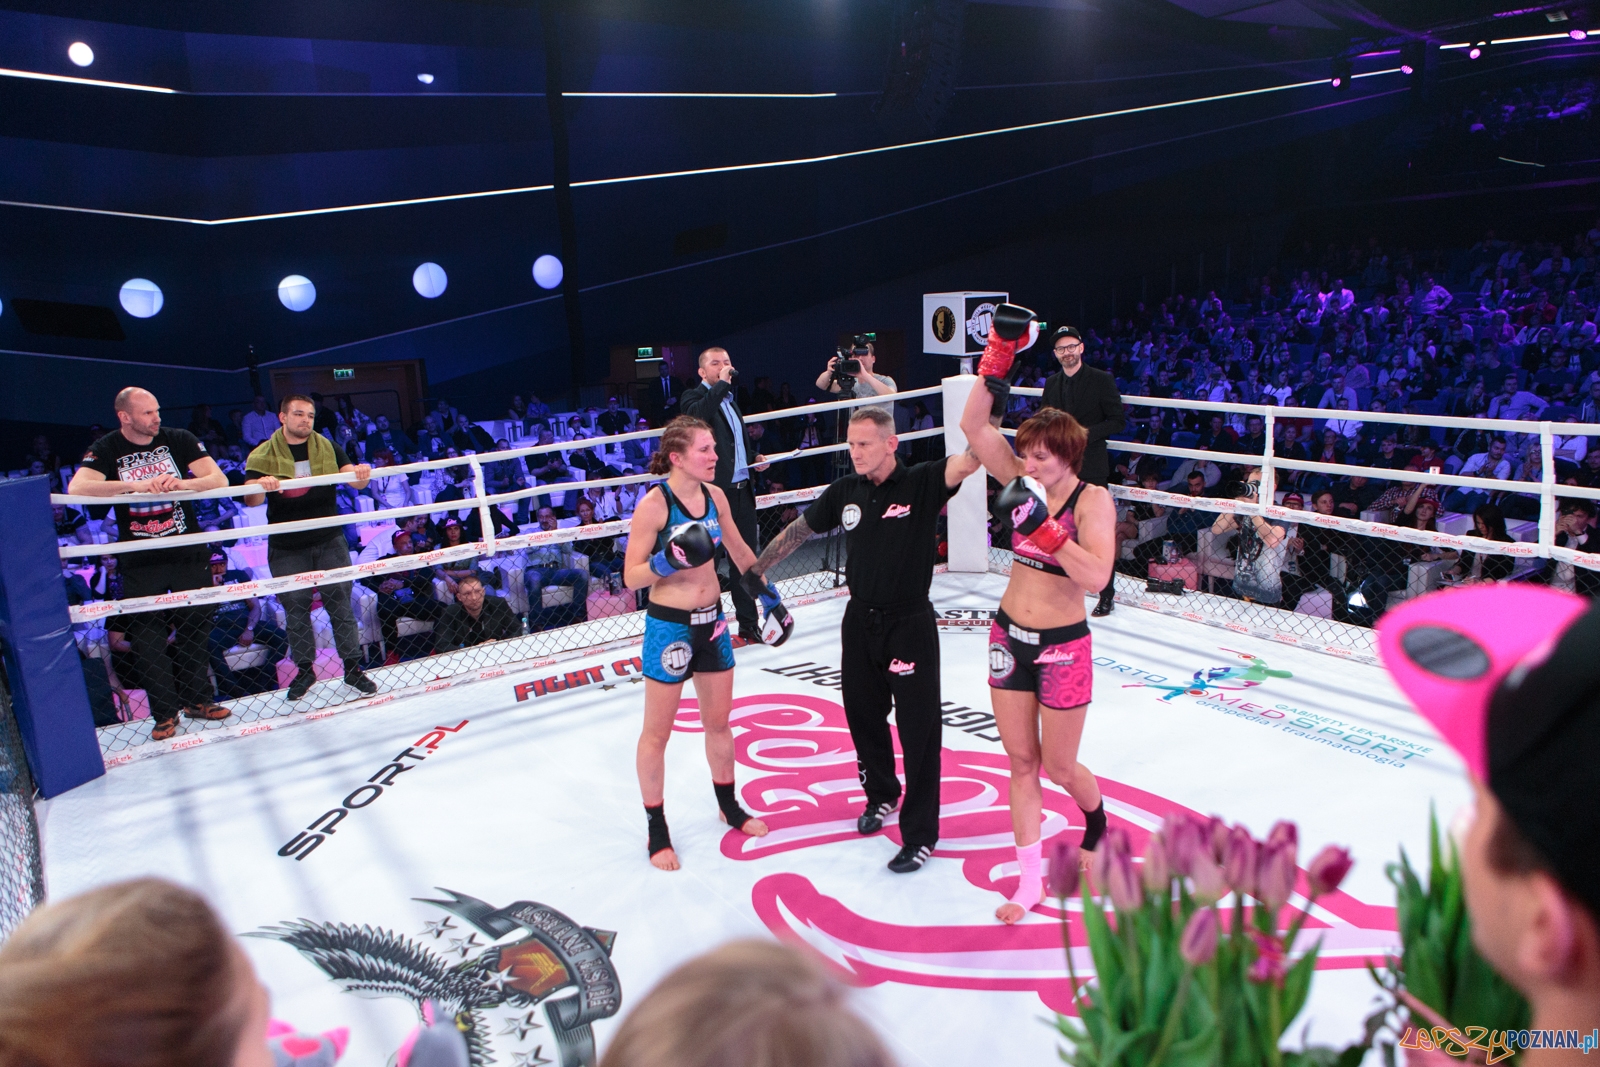 5. Gala Ladies Fight Night 2017 - Sala Ziemi. Poznań 08.04.2017  Foto: LepszyPOZNAN.pl / Paweł Rychter